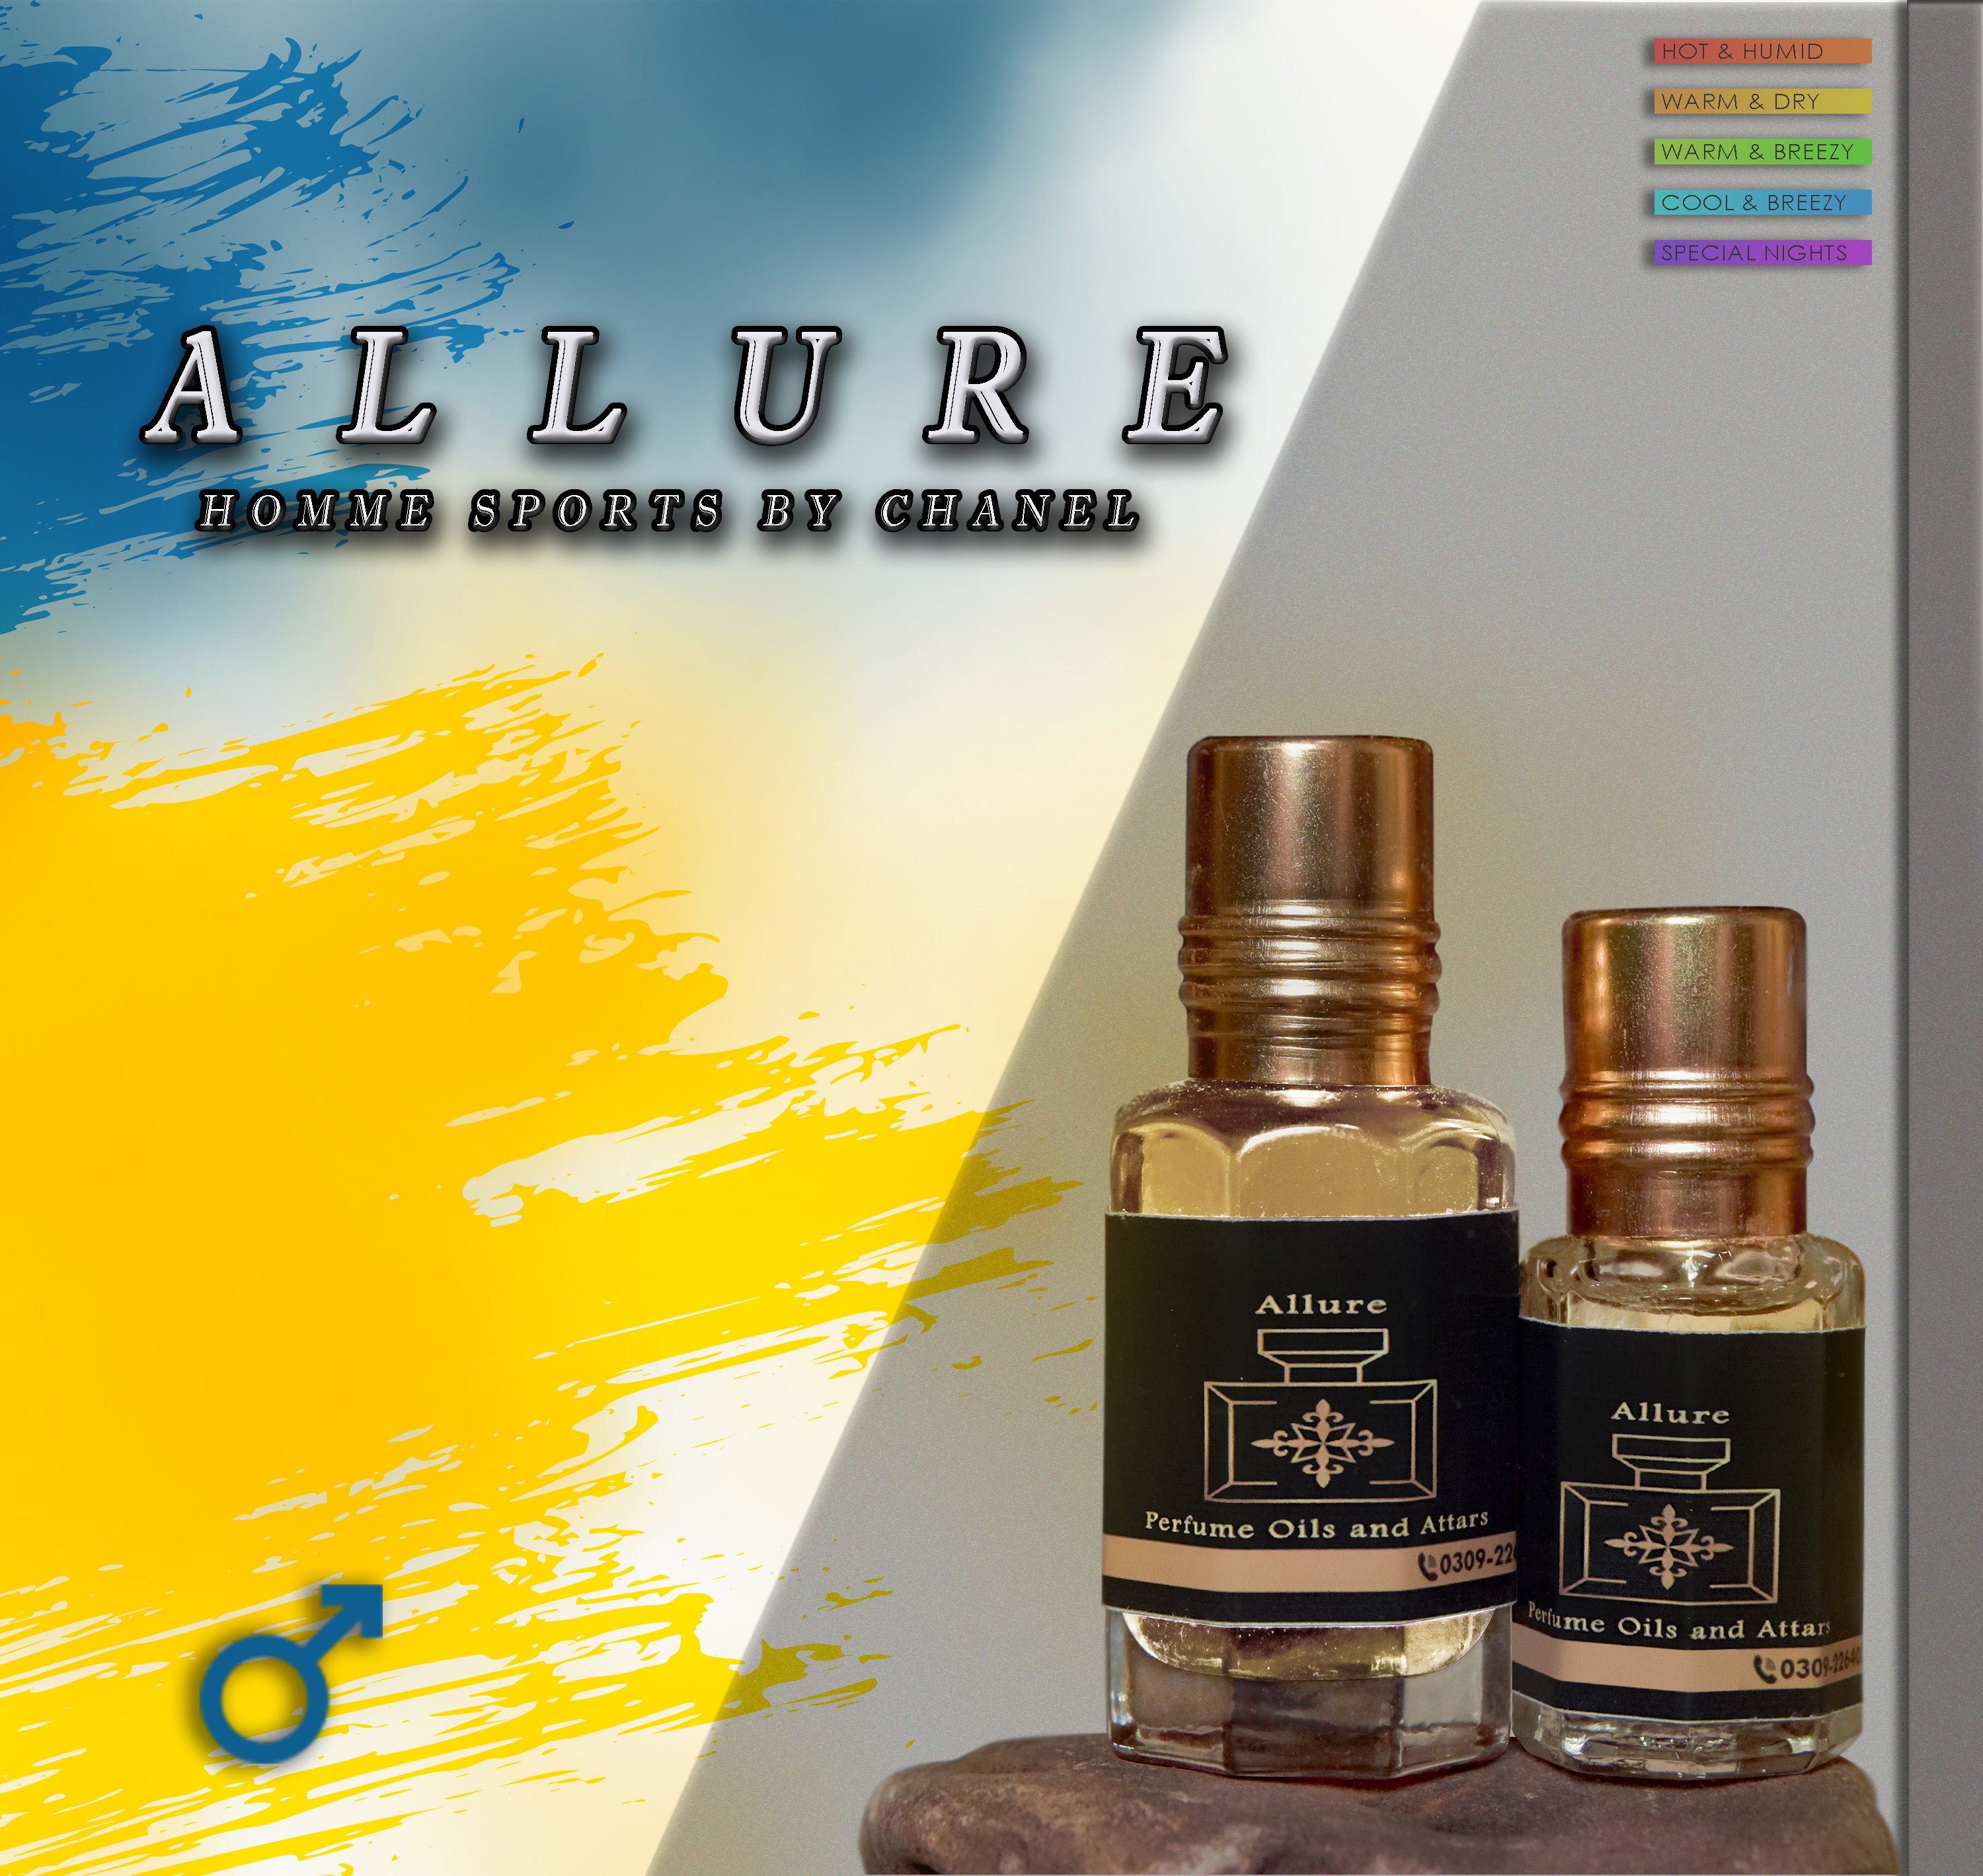 Allure Sports for men in Attar form – Allure Perfume Oils and Attars